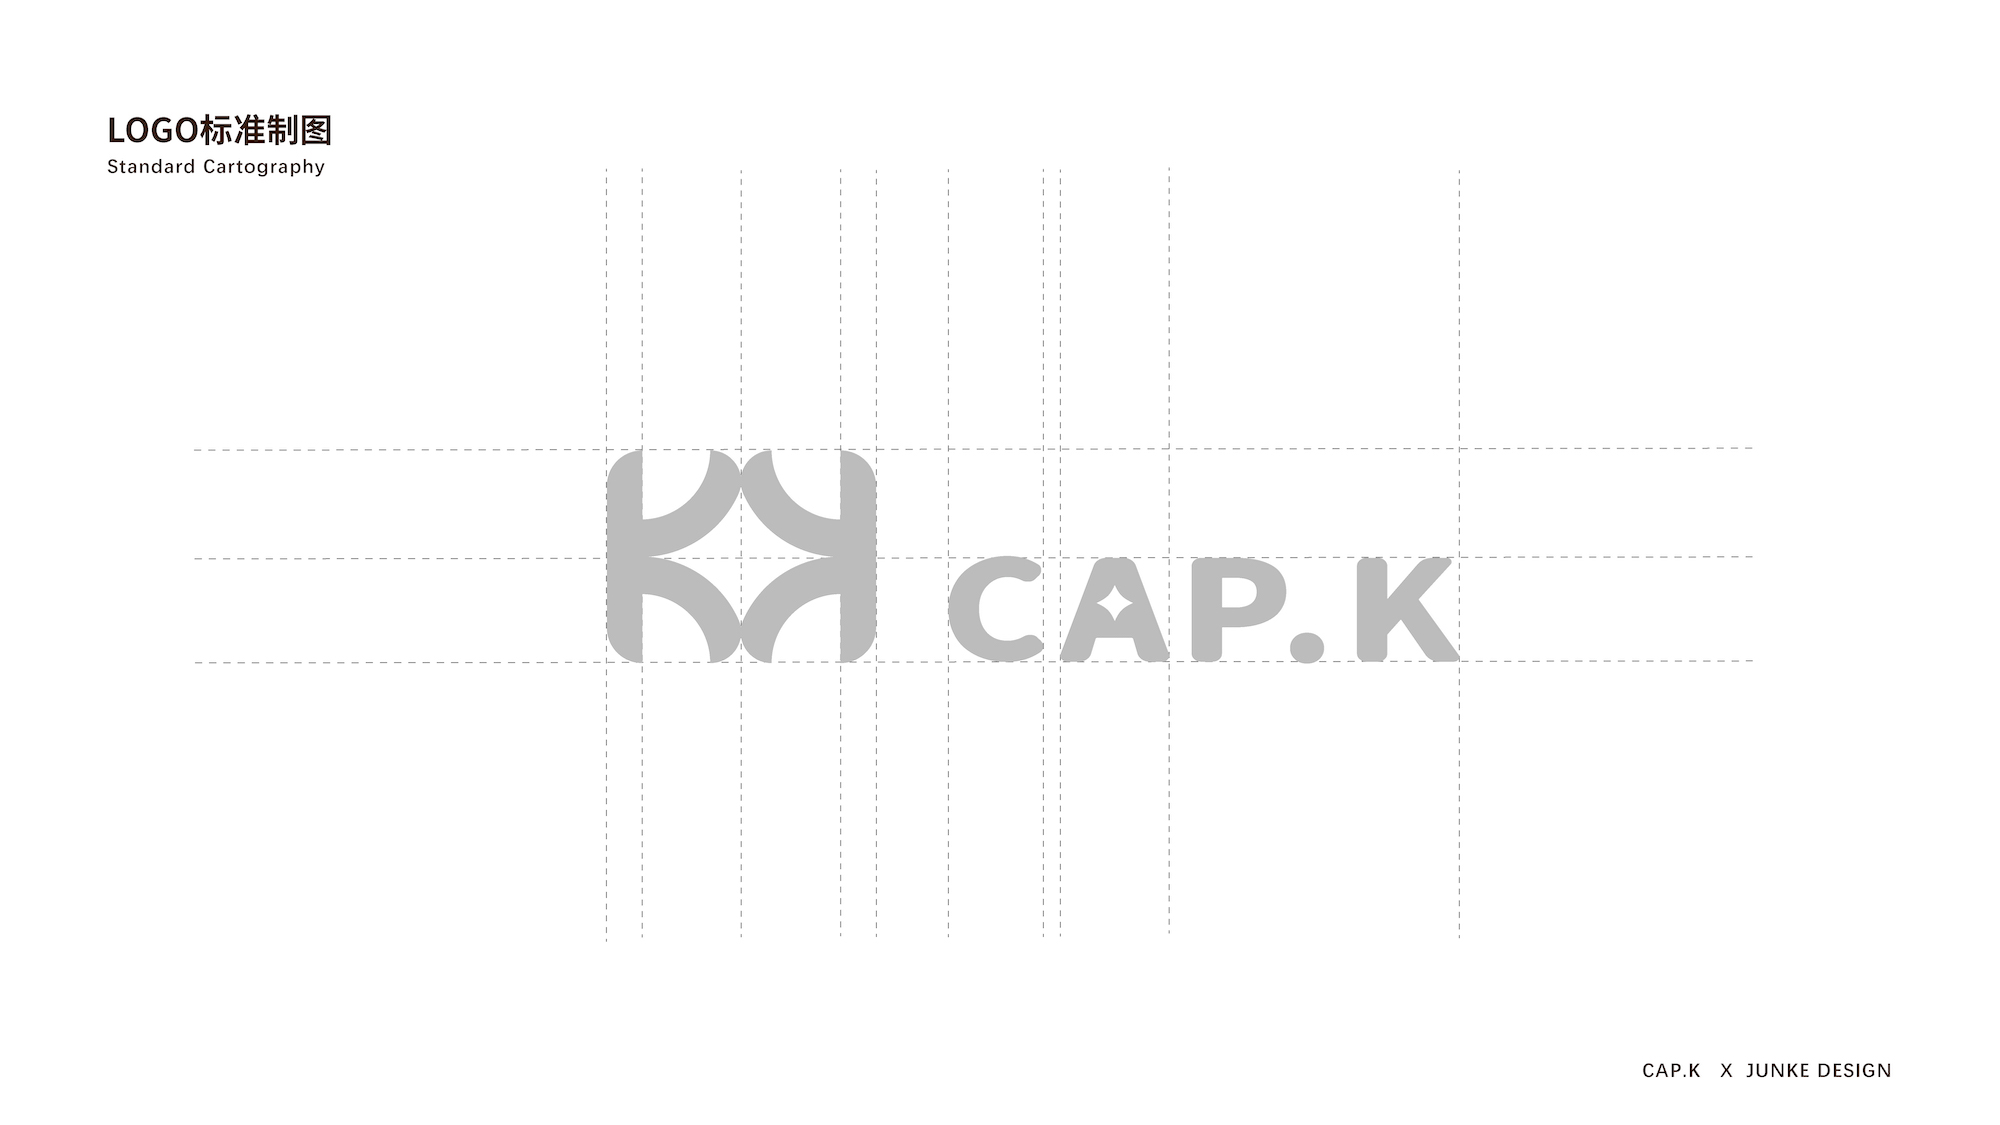 【细节设计】饰品店VI《cap.k》服帽品牌LOGO设计